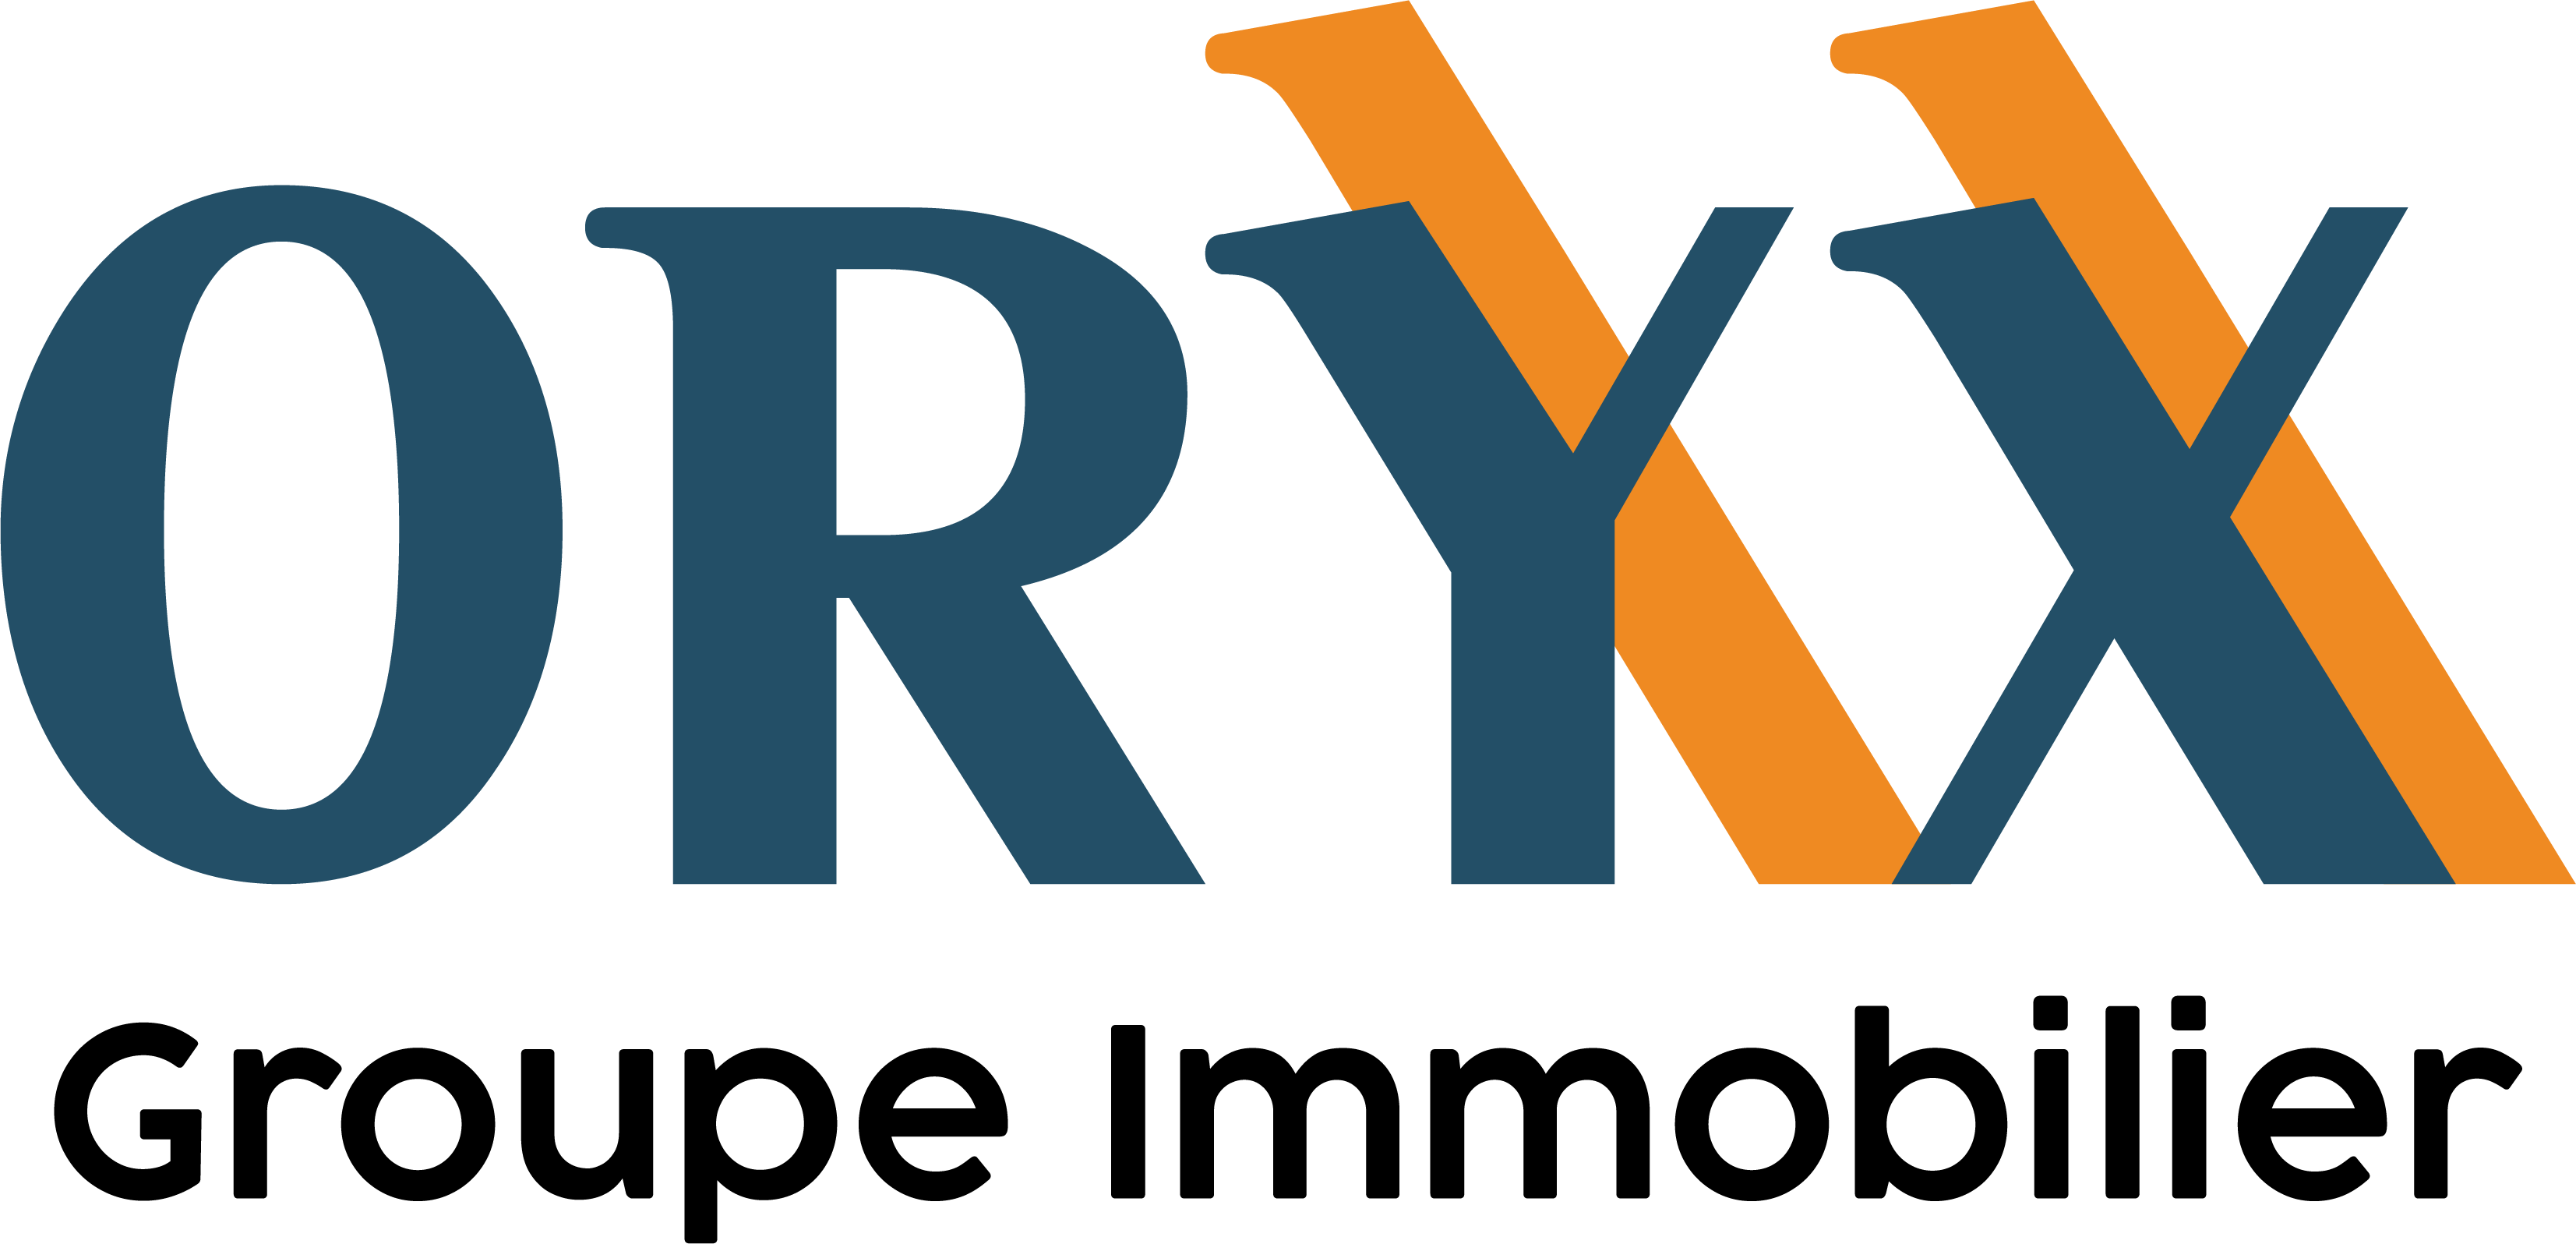 Oryx logo